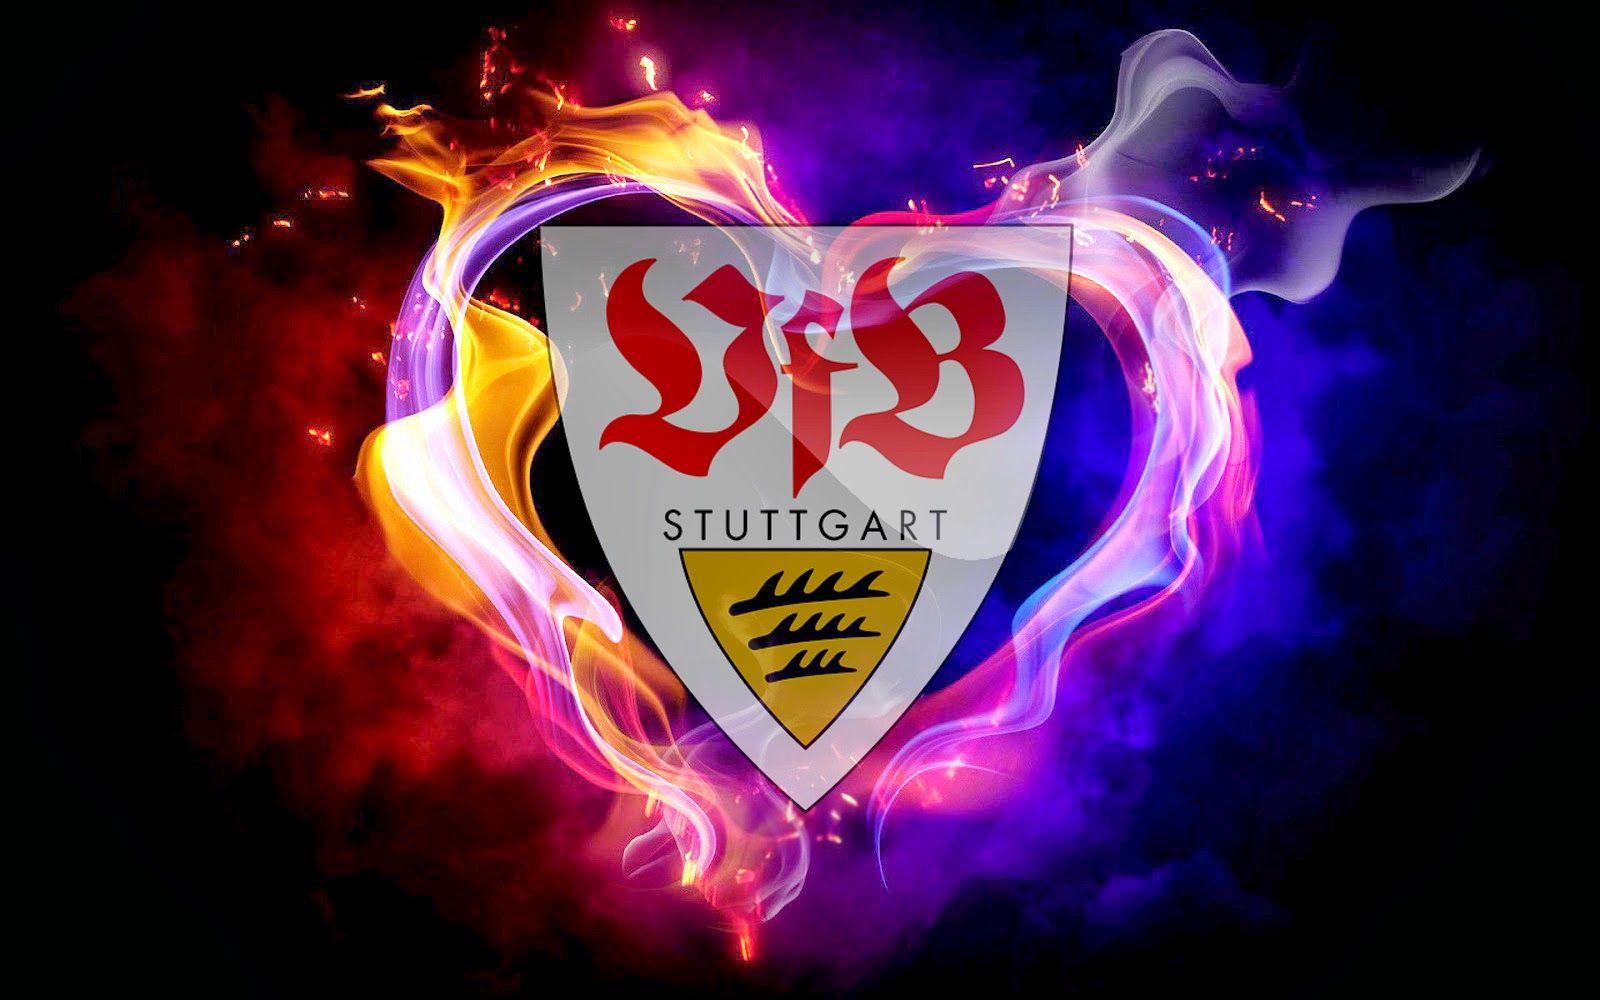 VfB Stuttgart Wallpaper